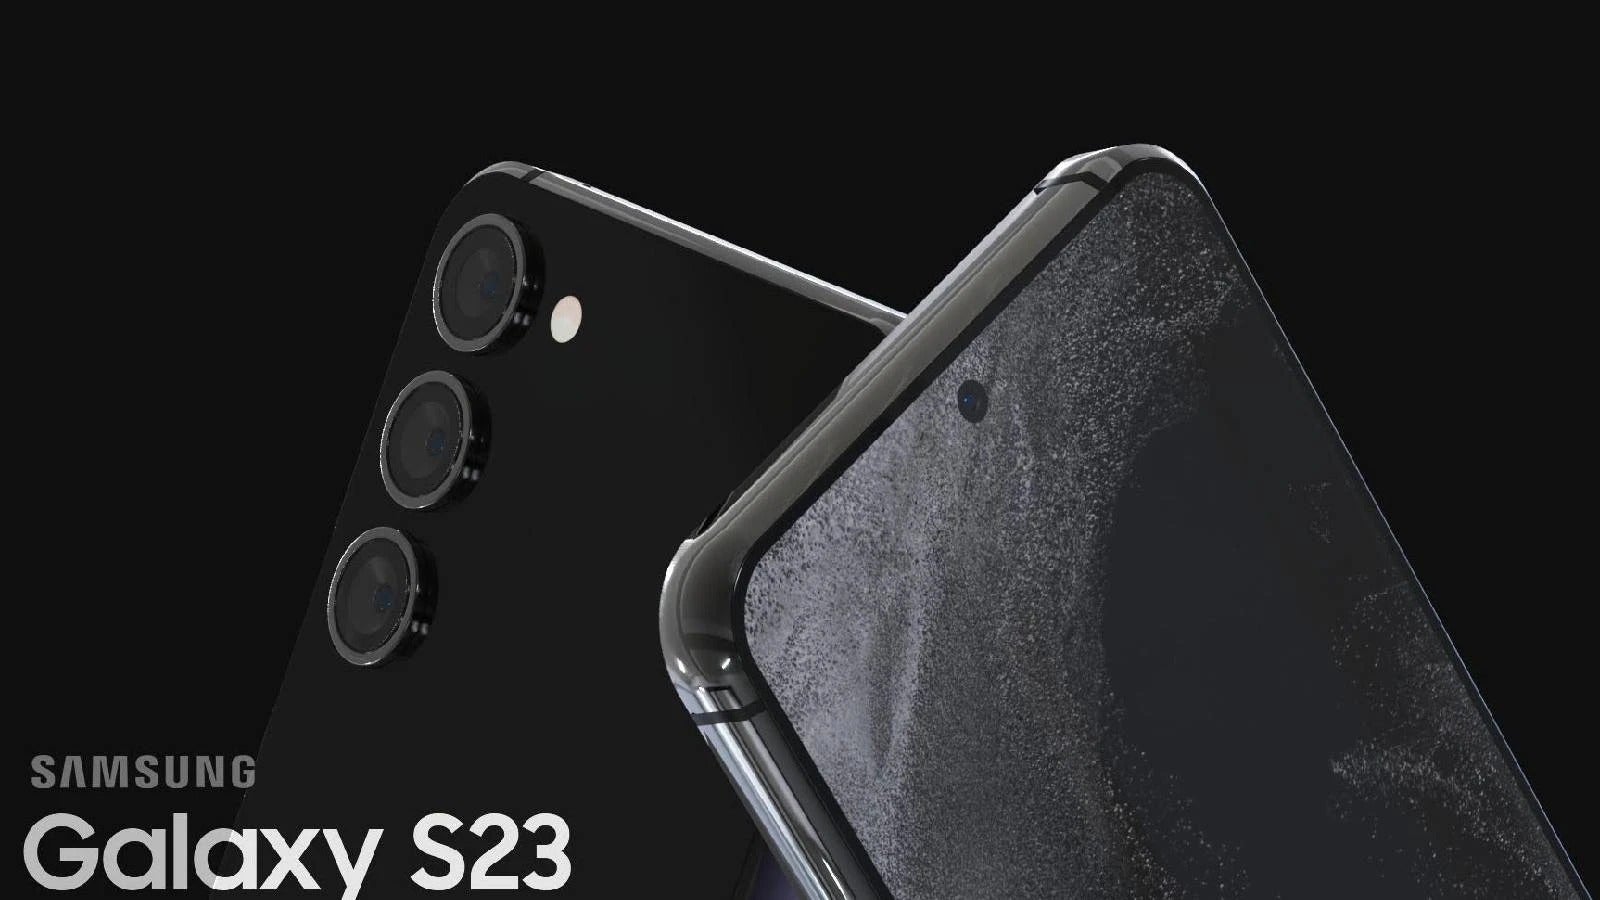 Galaxy S23 basado en una fuga (Crédito de la imagen - 4RMD) - Samsung Galaxy S23 vs Galaxy S22: Expectativas